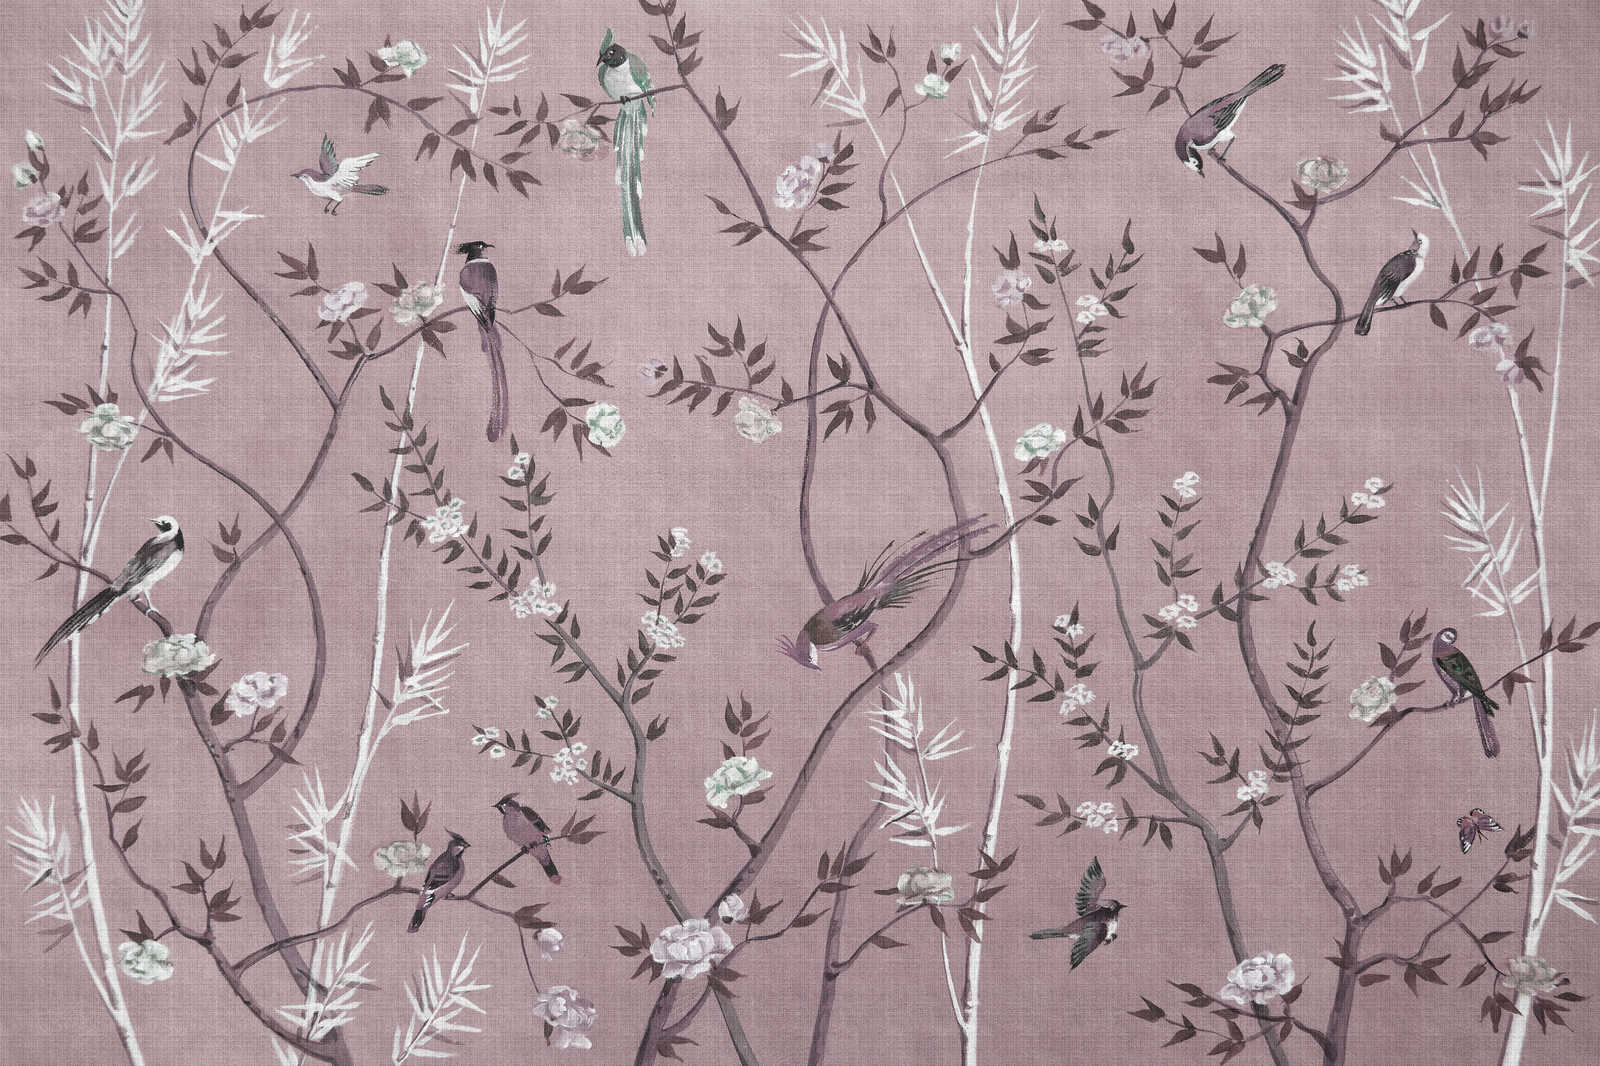             Tea Room 3 - Quadro su tela Birds & Blossoms Design in rosa e bianco - 1,20 m x 0,80 m
        